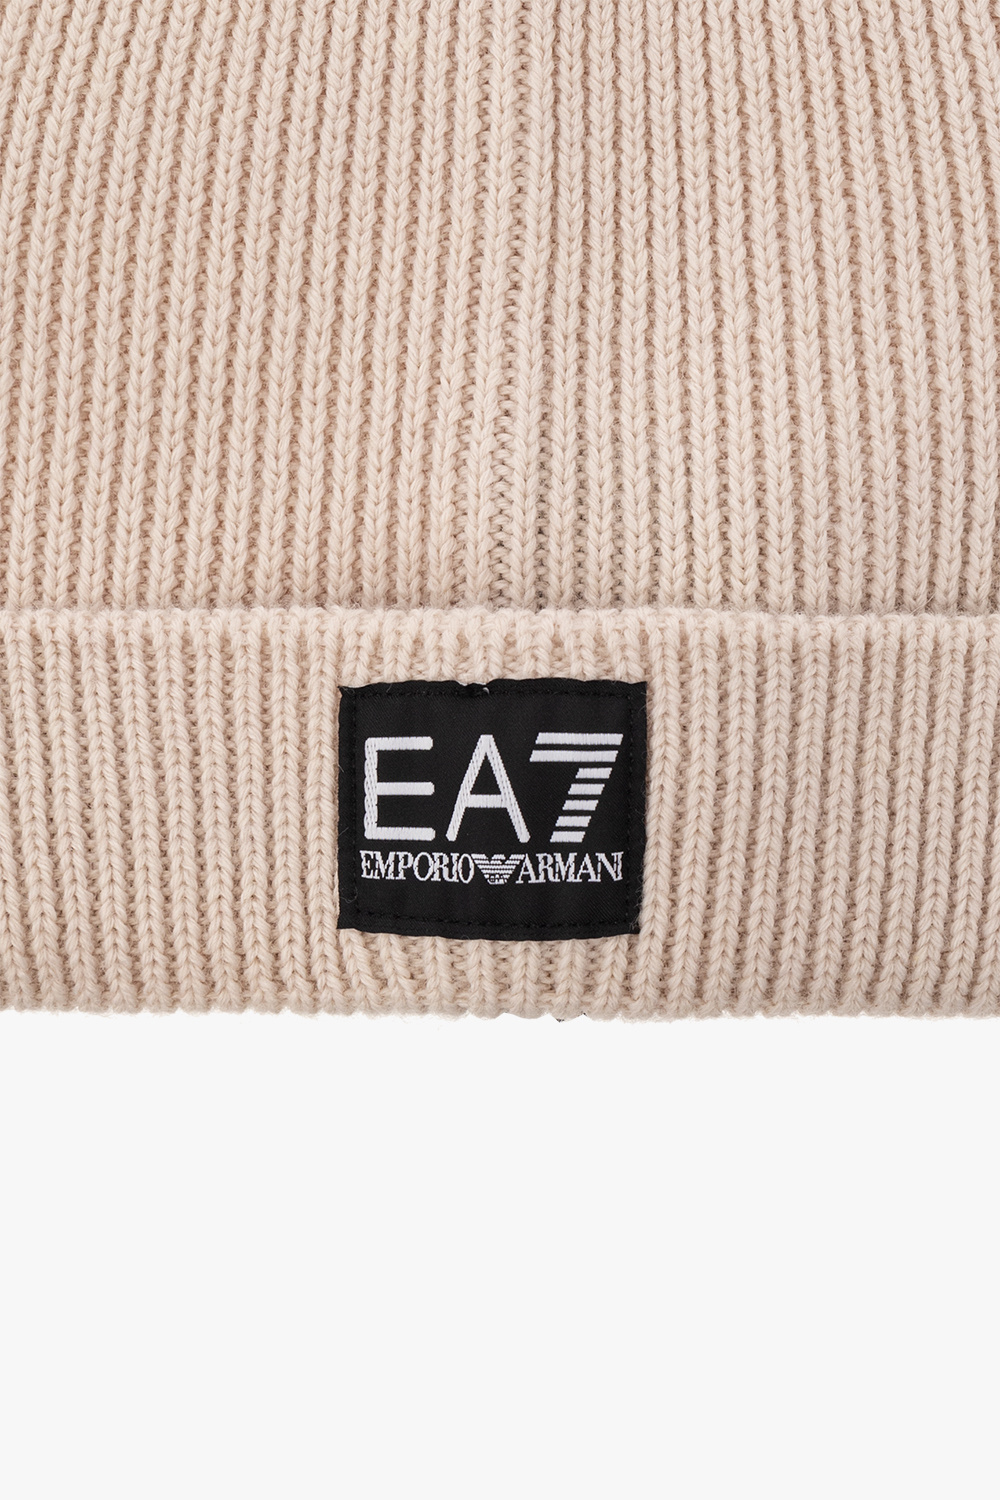 EA7 Emporio Armani Ochelari with logo